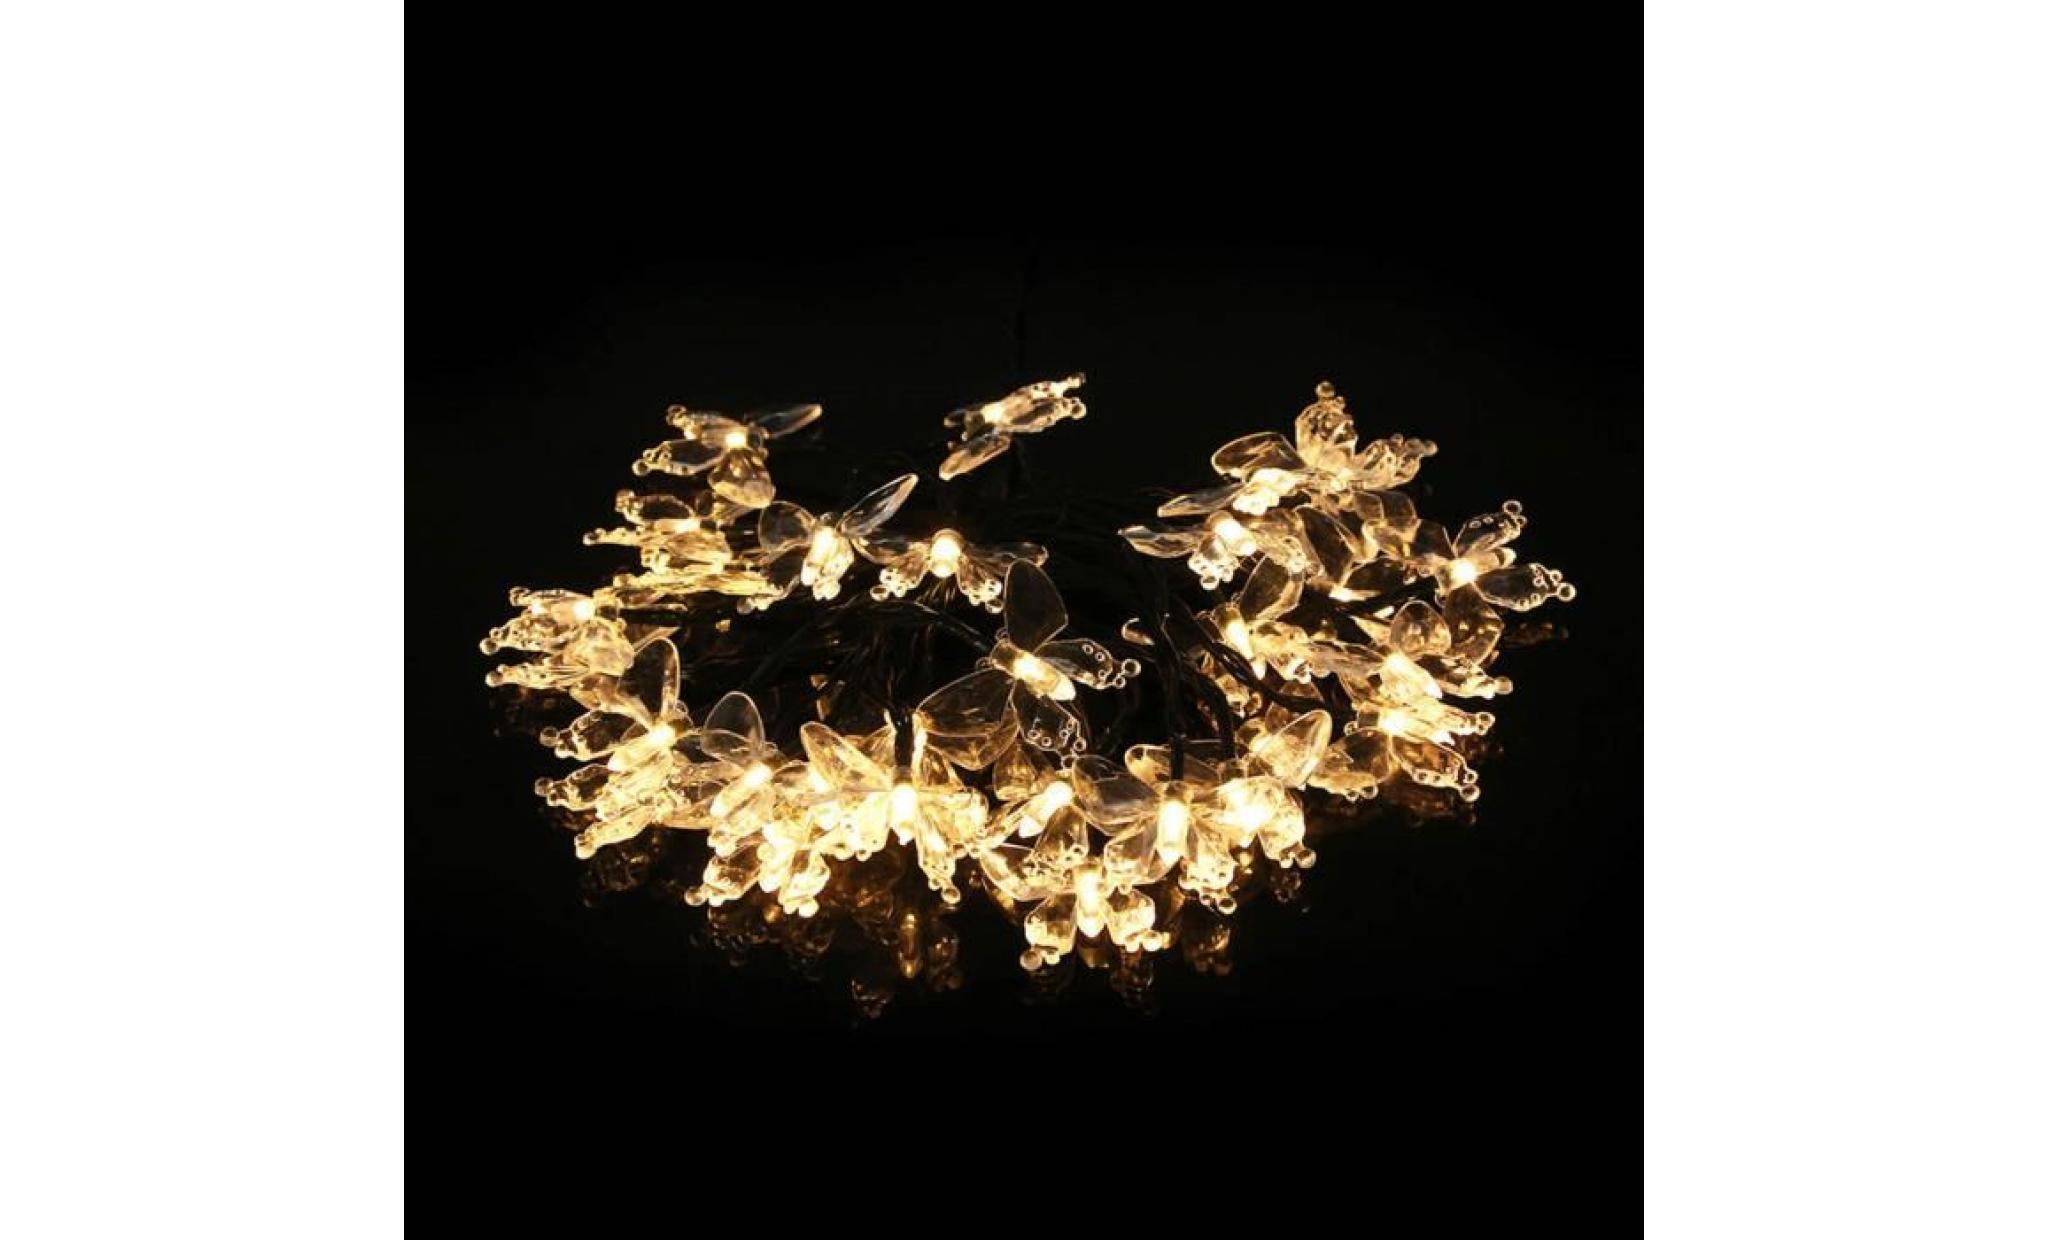 30 leds chaîne d'énergie solaire étanche lampe de papillons pour la décoration de fête de noël en plein air blanc chaud